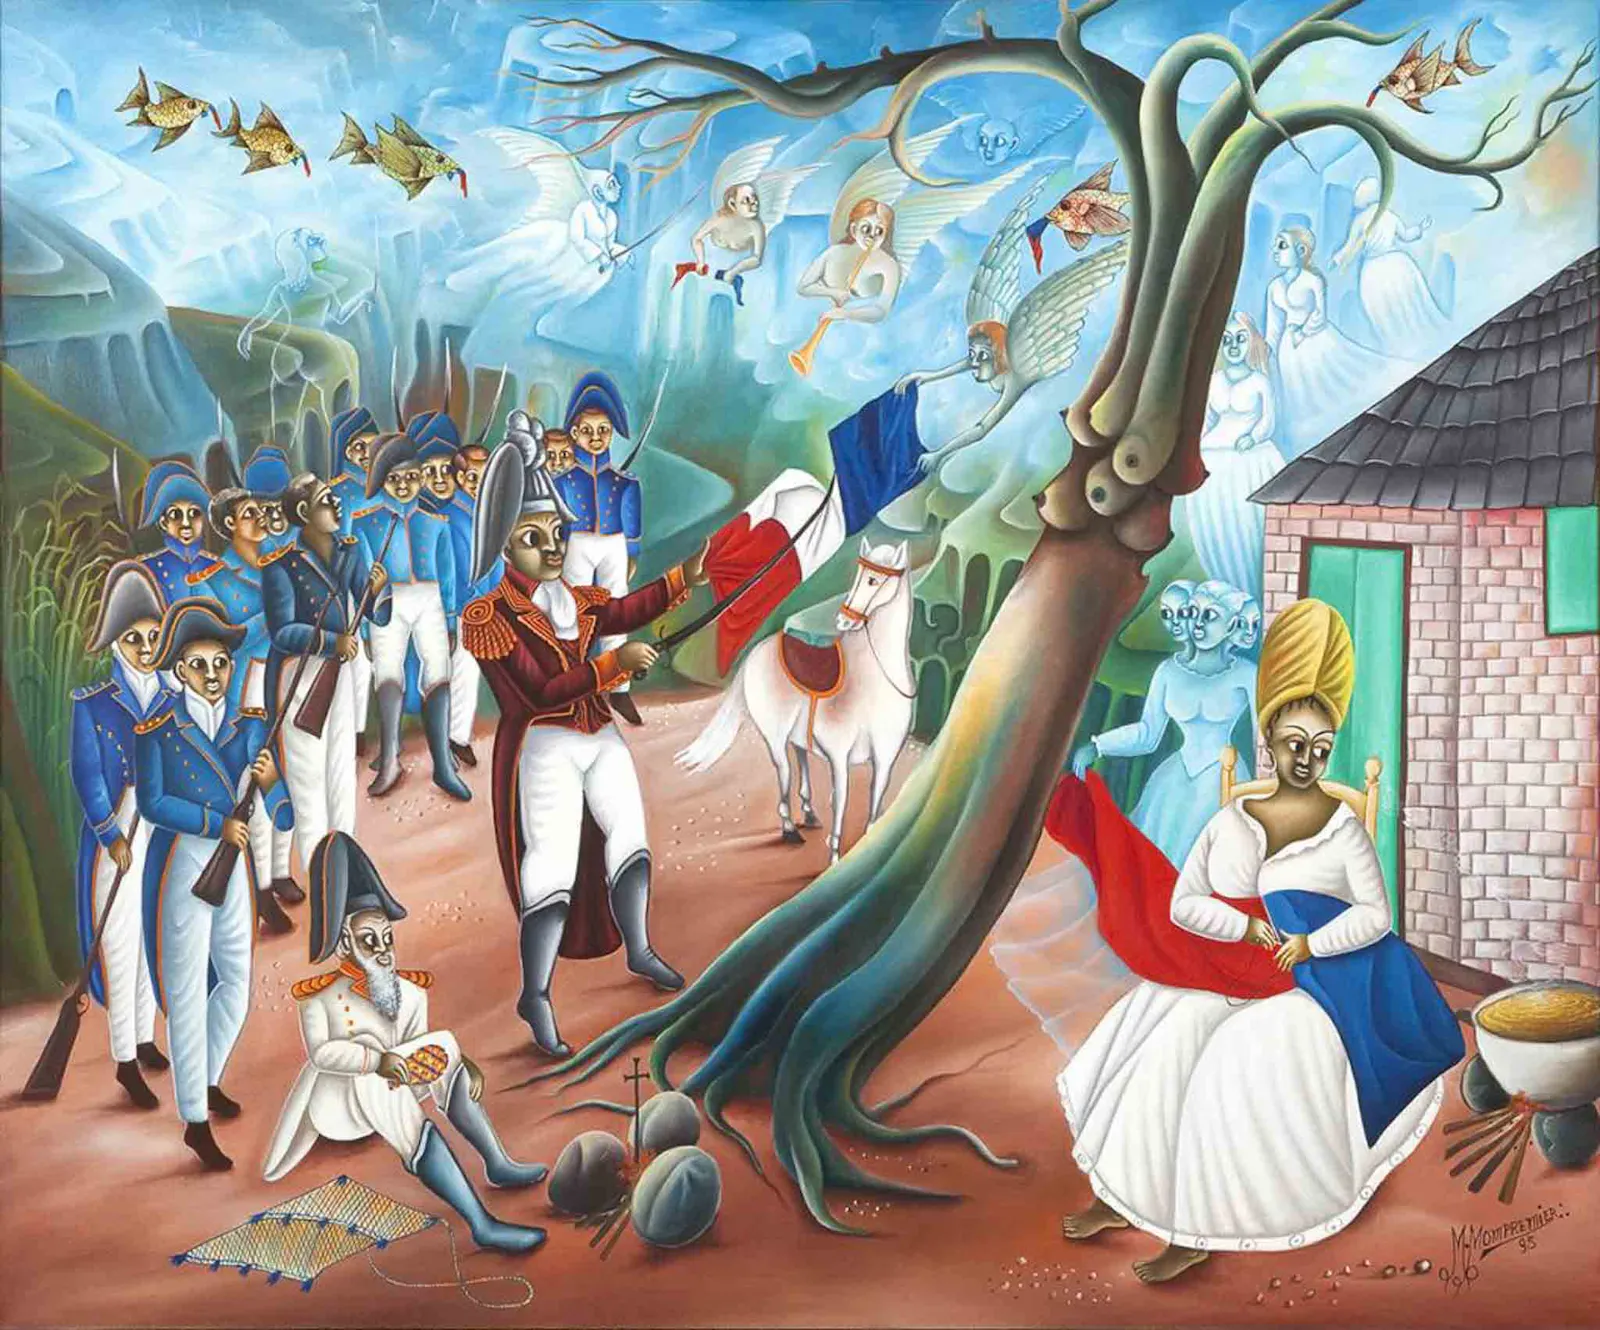 Gemälde "Dessalines Ripping the White from the Flag" von Madsen Mompremier, Darstellung der Revolution in Haiti